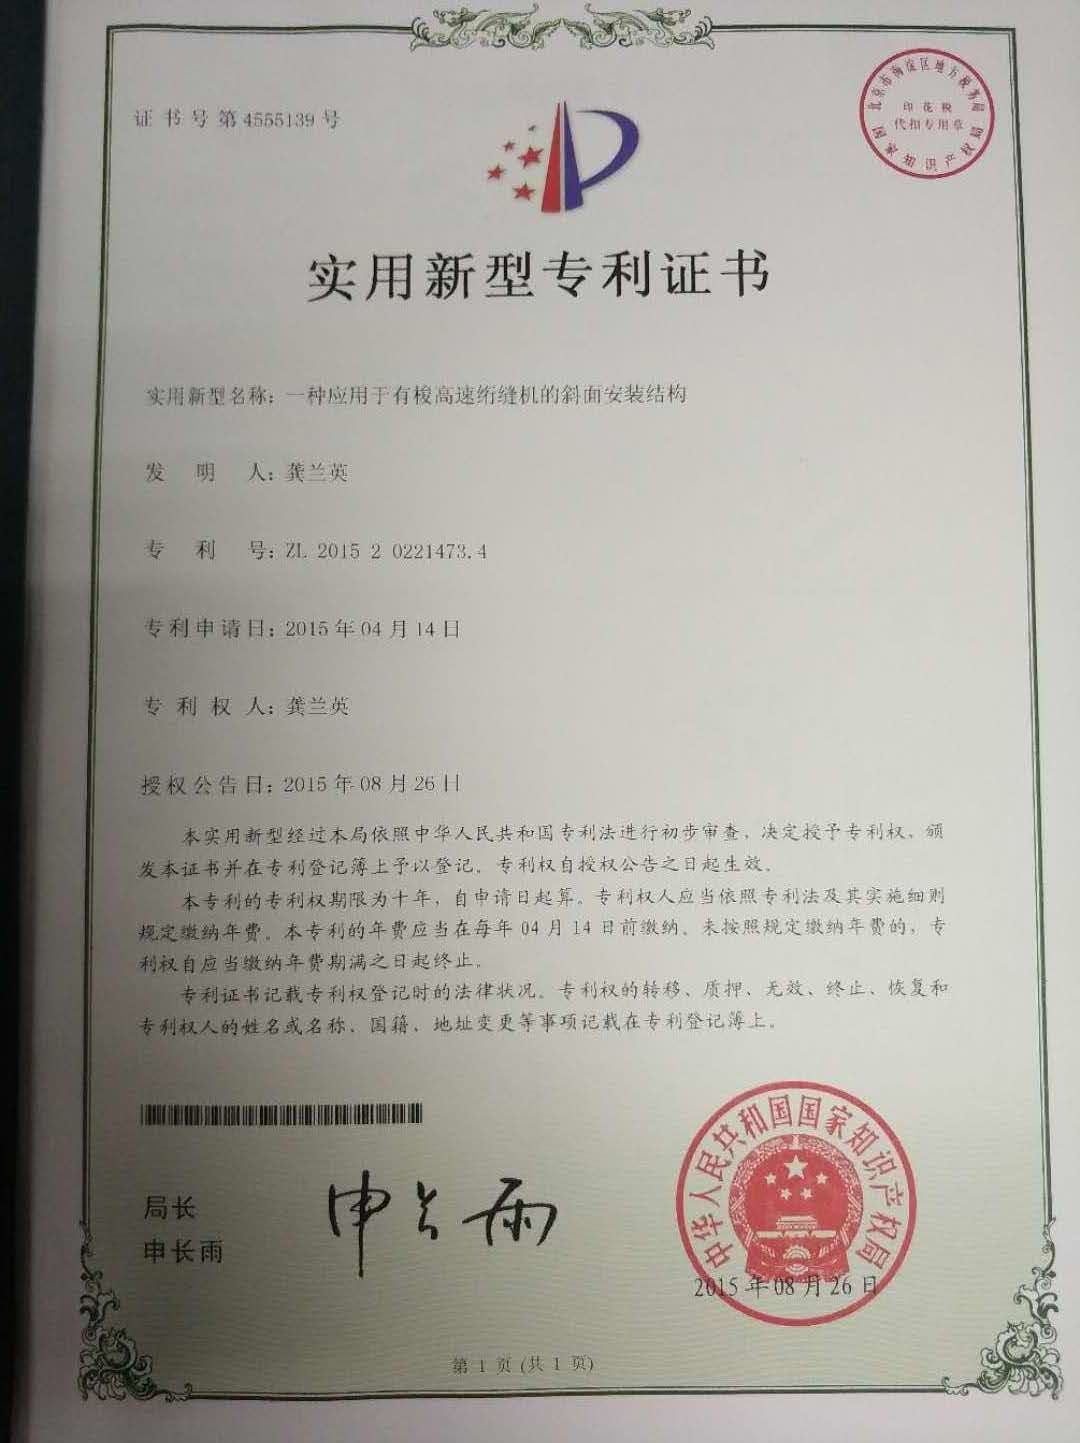 China Dongguan Yuxing Machinery Equipment Technology Co., Ltd. Certification